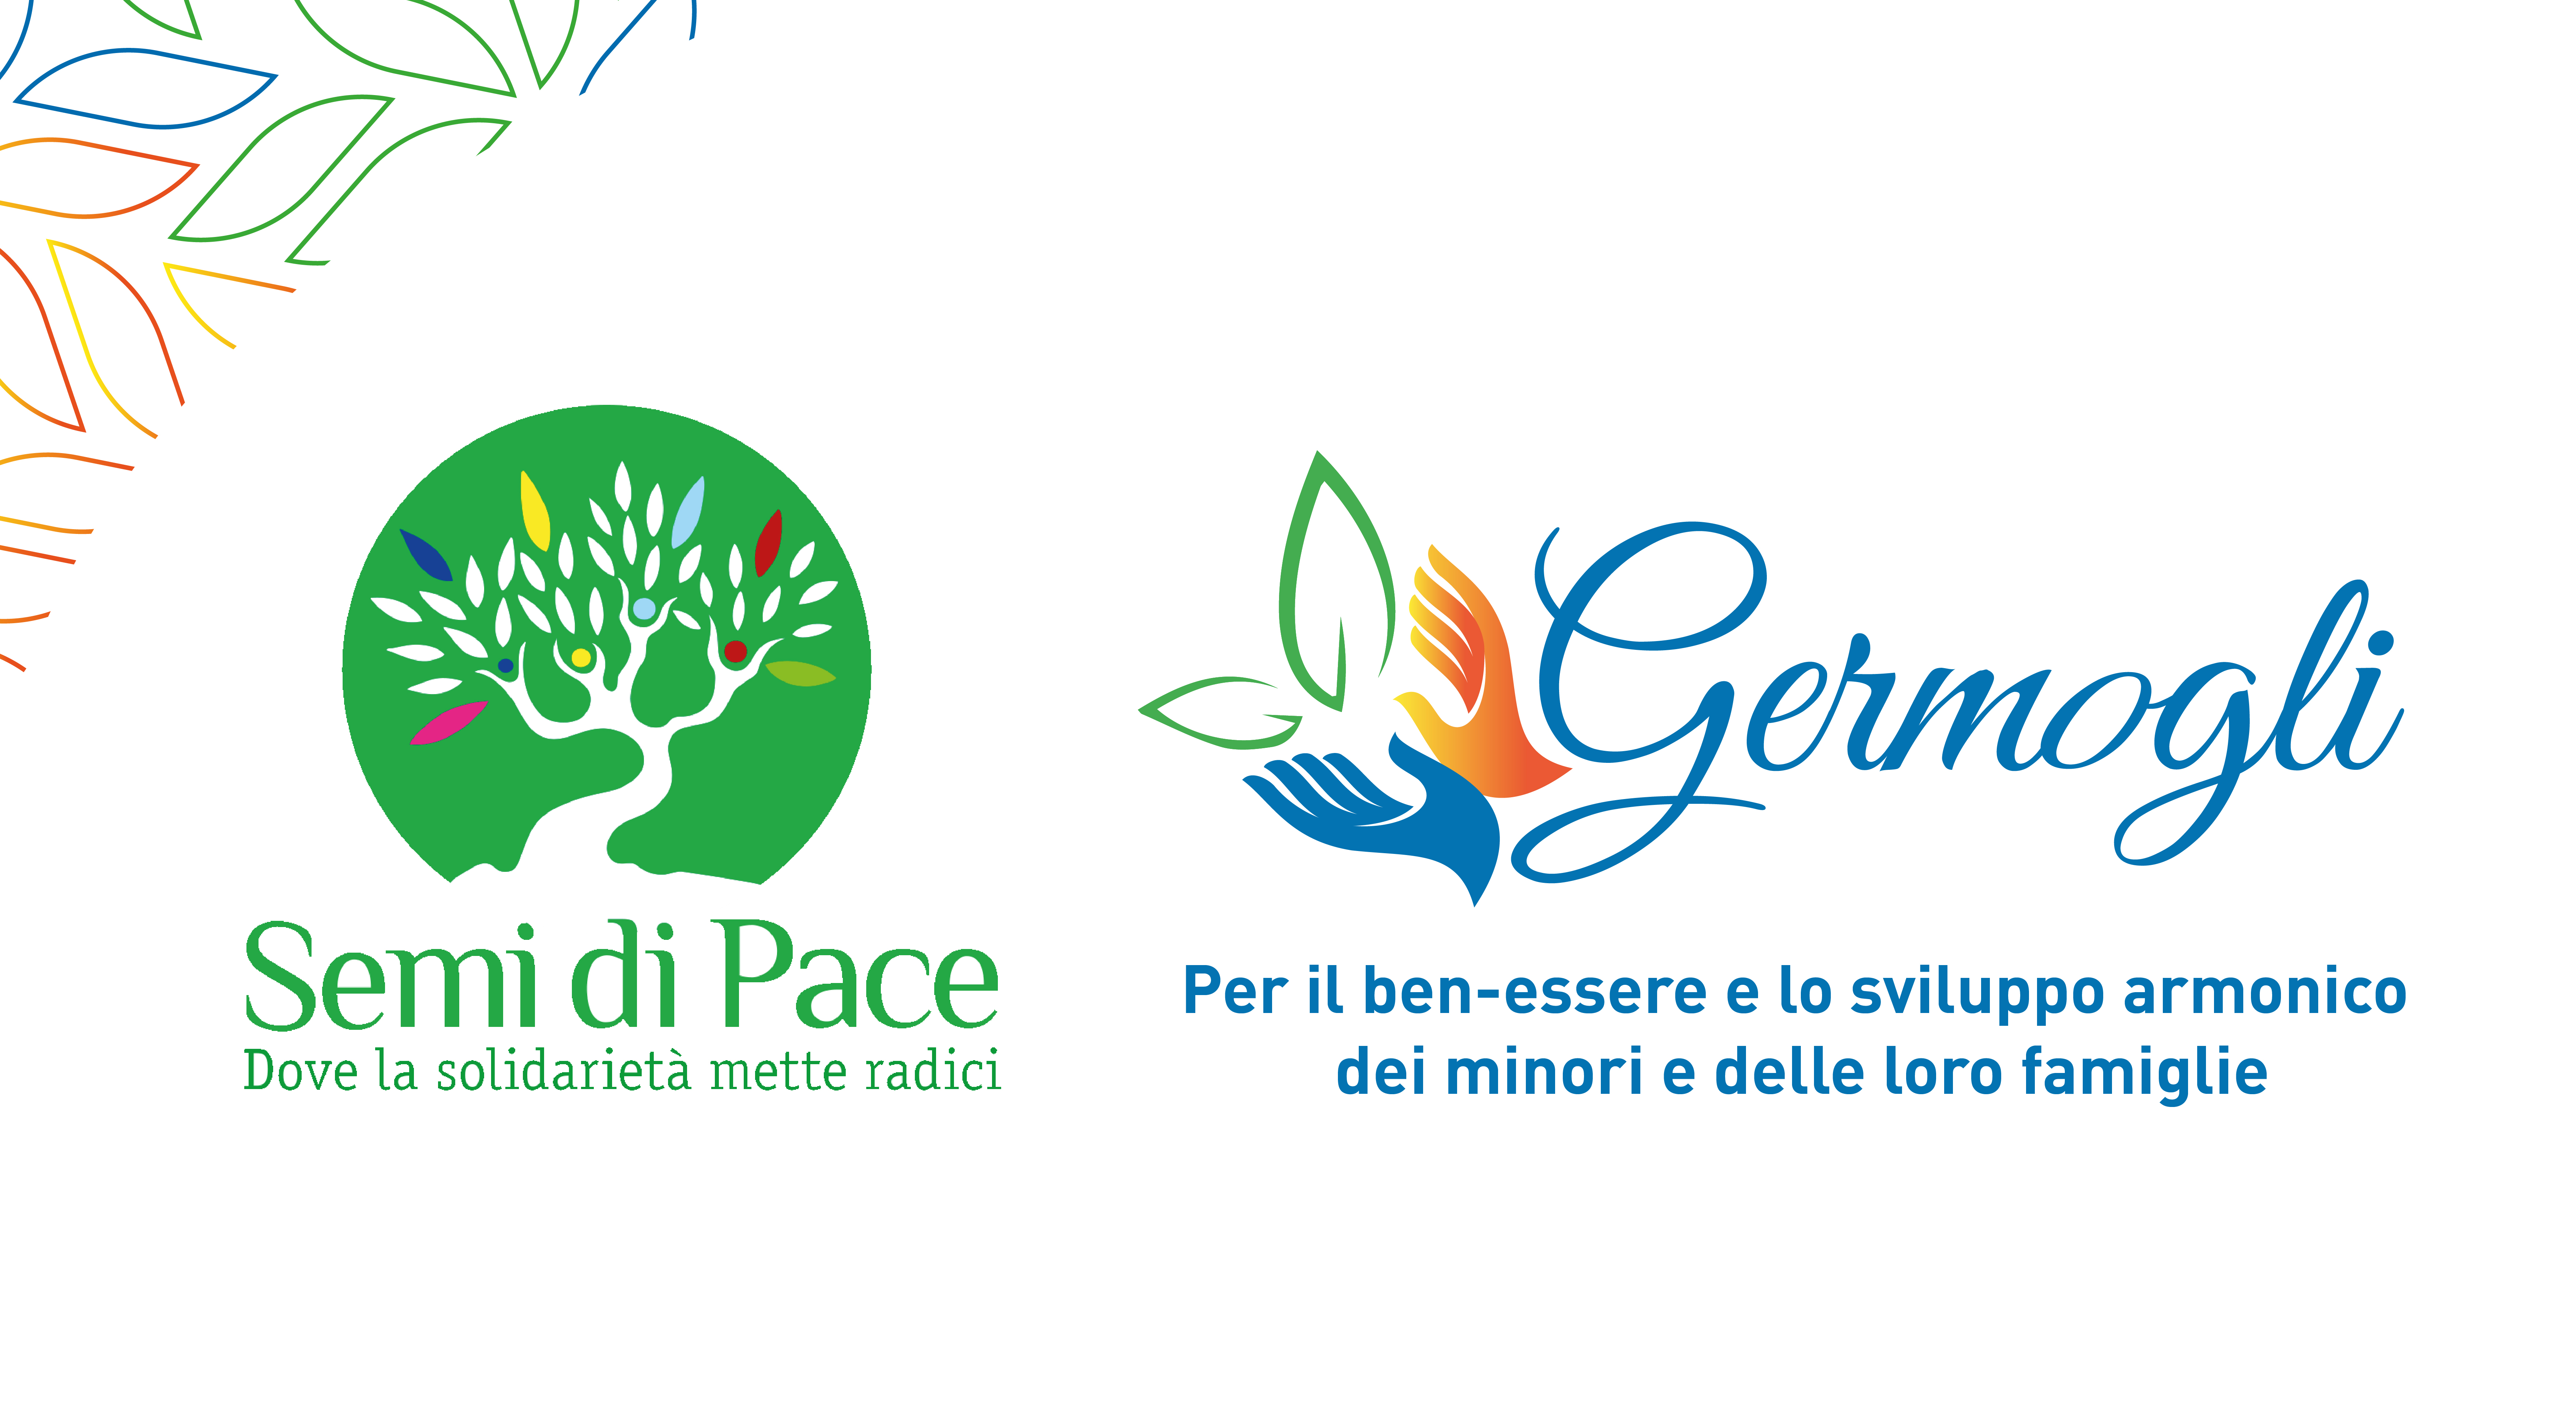 Progetto Germogli, della rete territoriale di Semi di Pace di Latina: un aiuto concreto per i minori e le loro famiglie